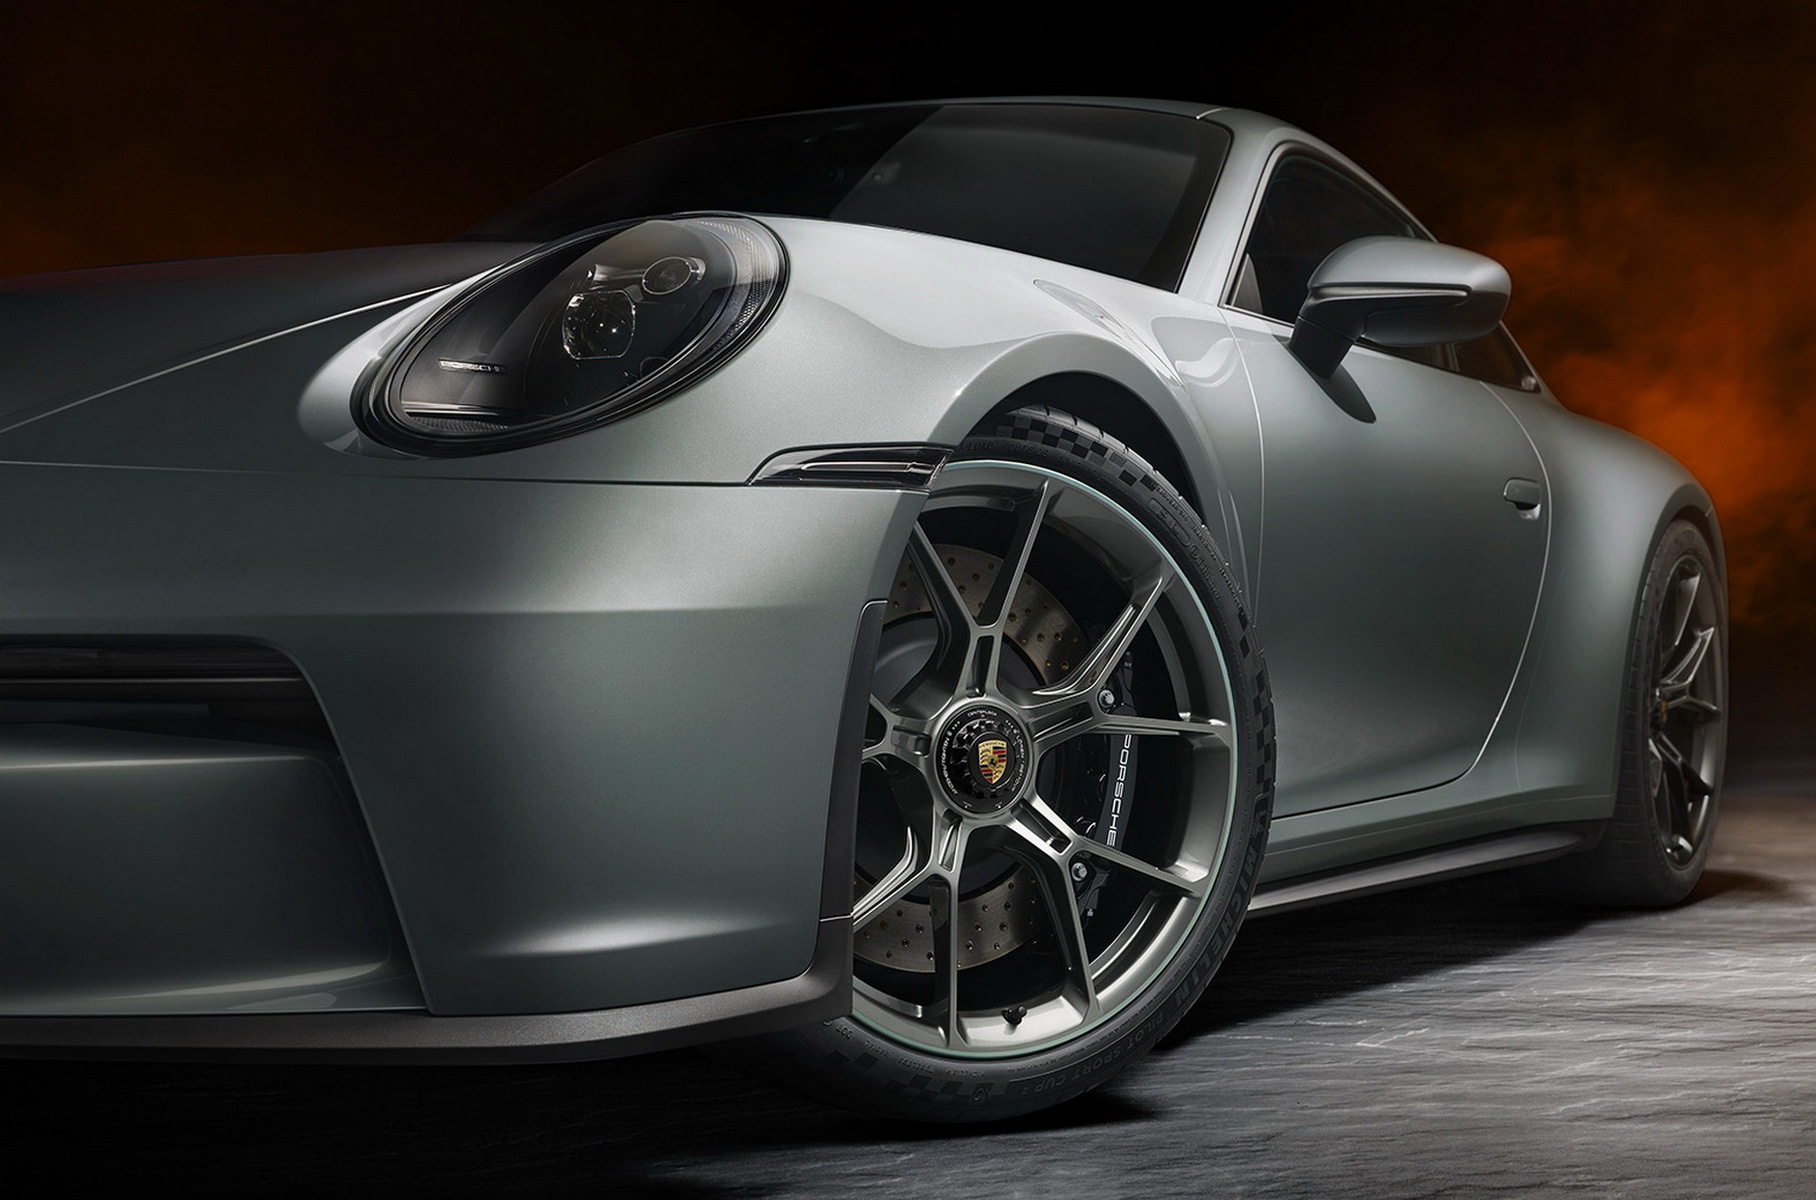 Porsche отметила 70-летний юбилей выпуском спецверсии 911 GT3